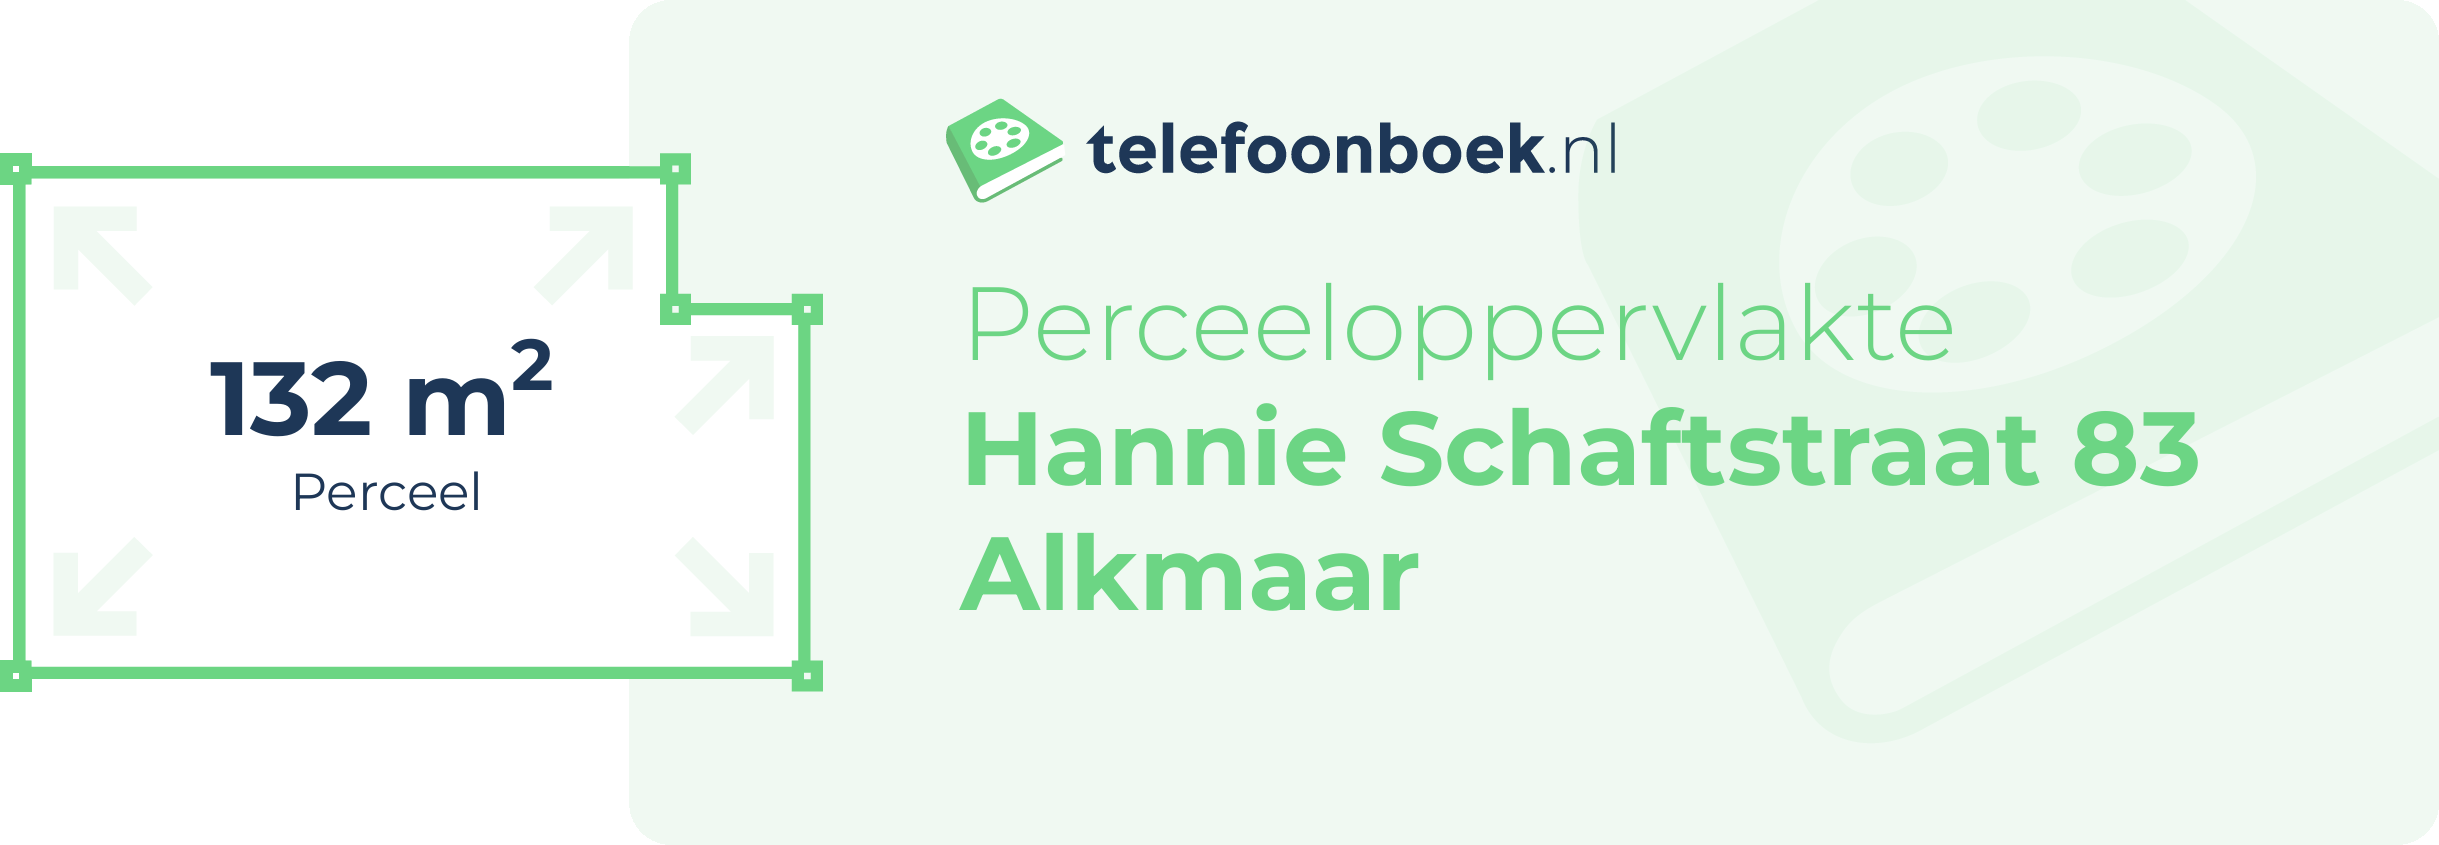 Perceeloppervlakte Hannie Schaftstraat 83 Alkmaar